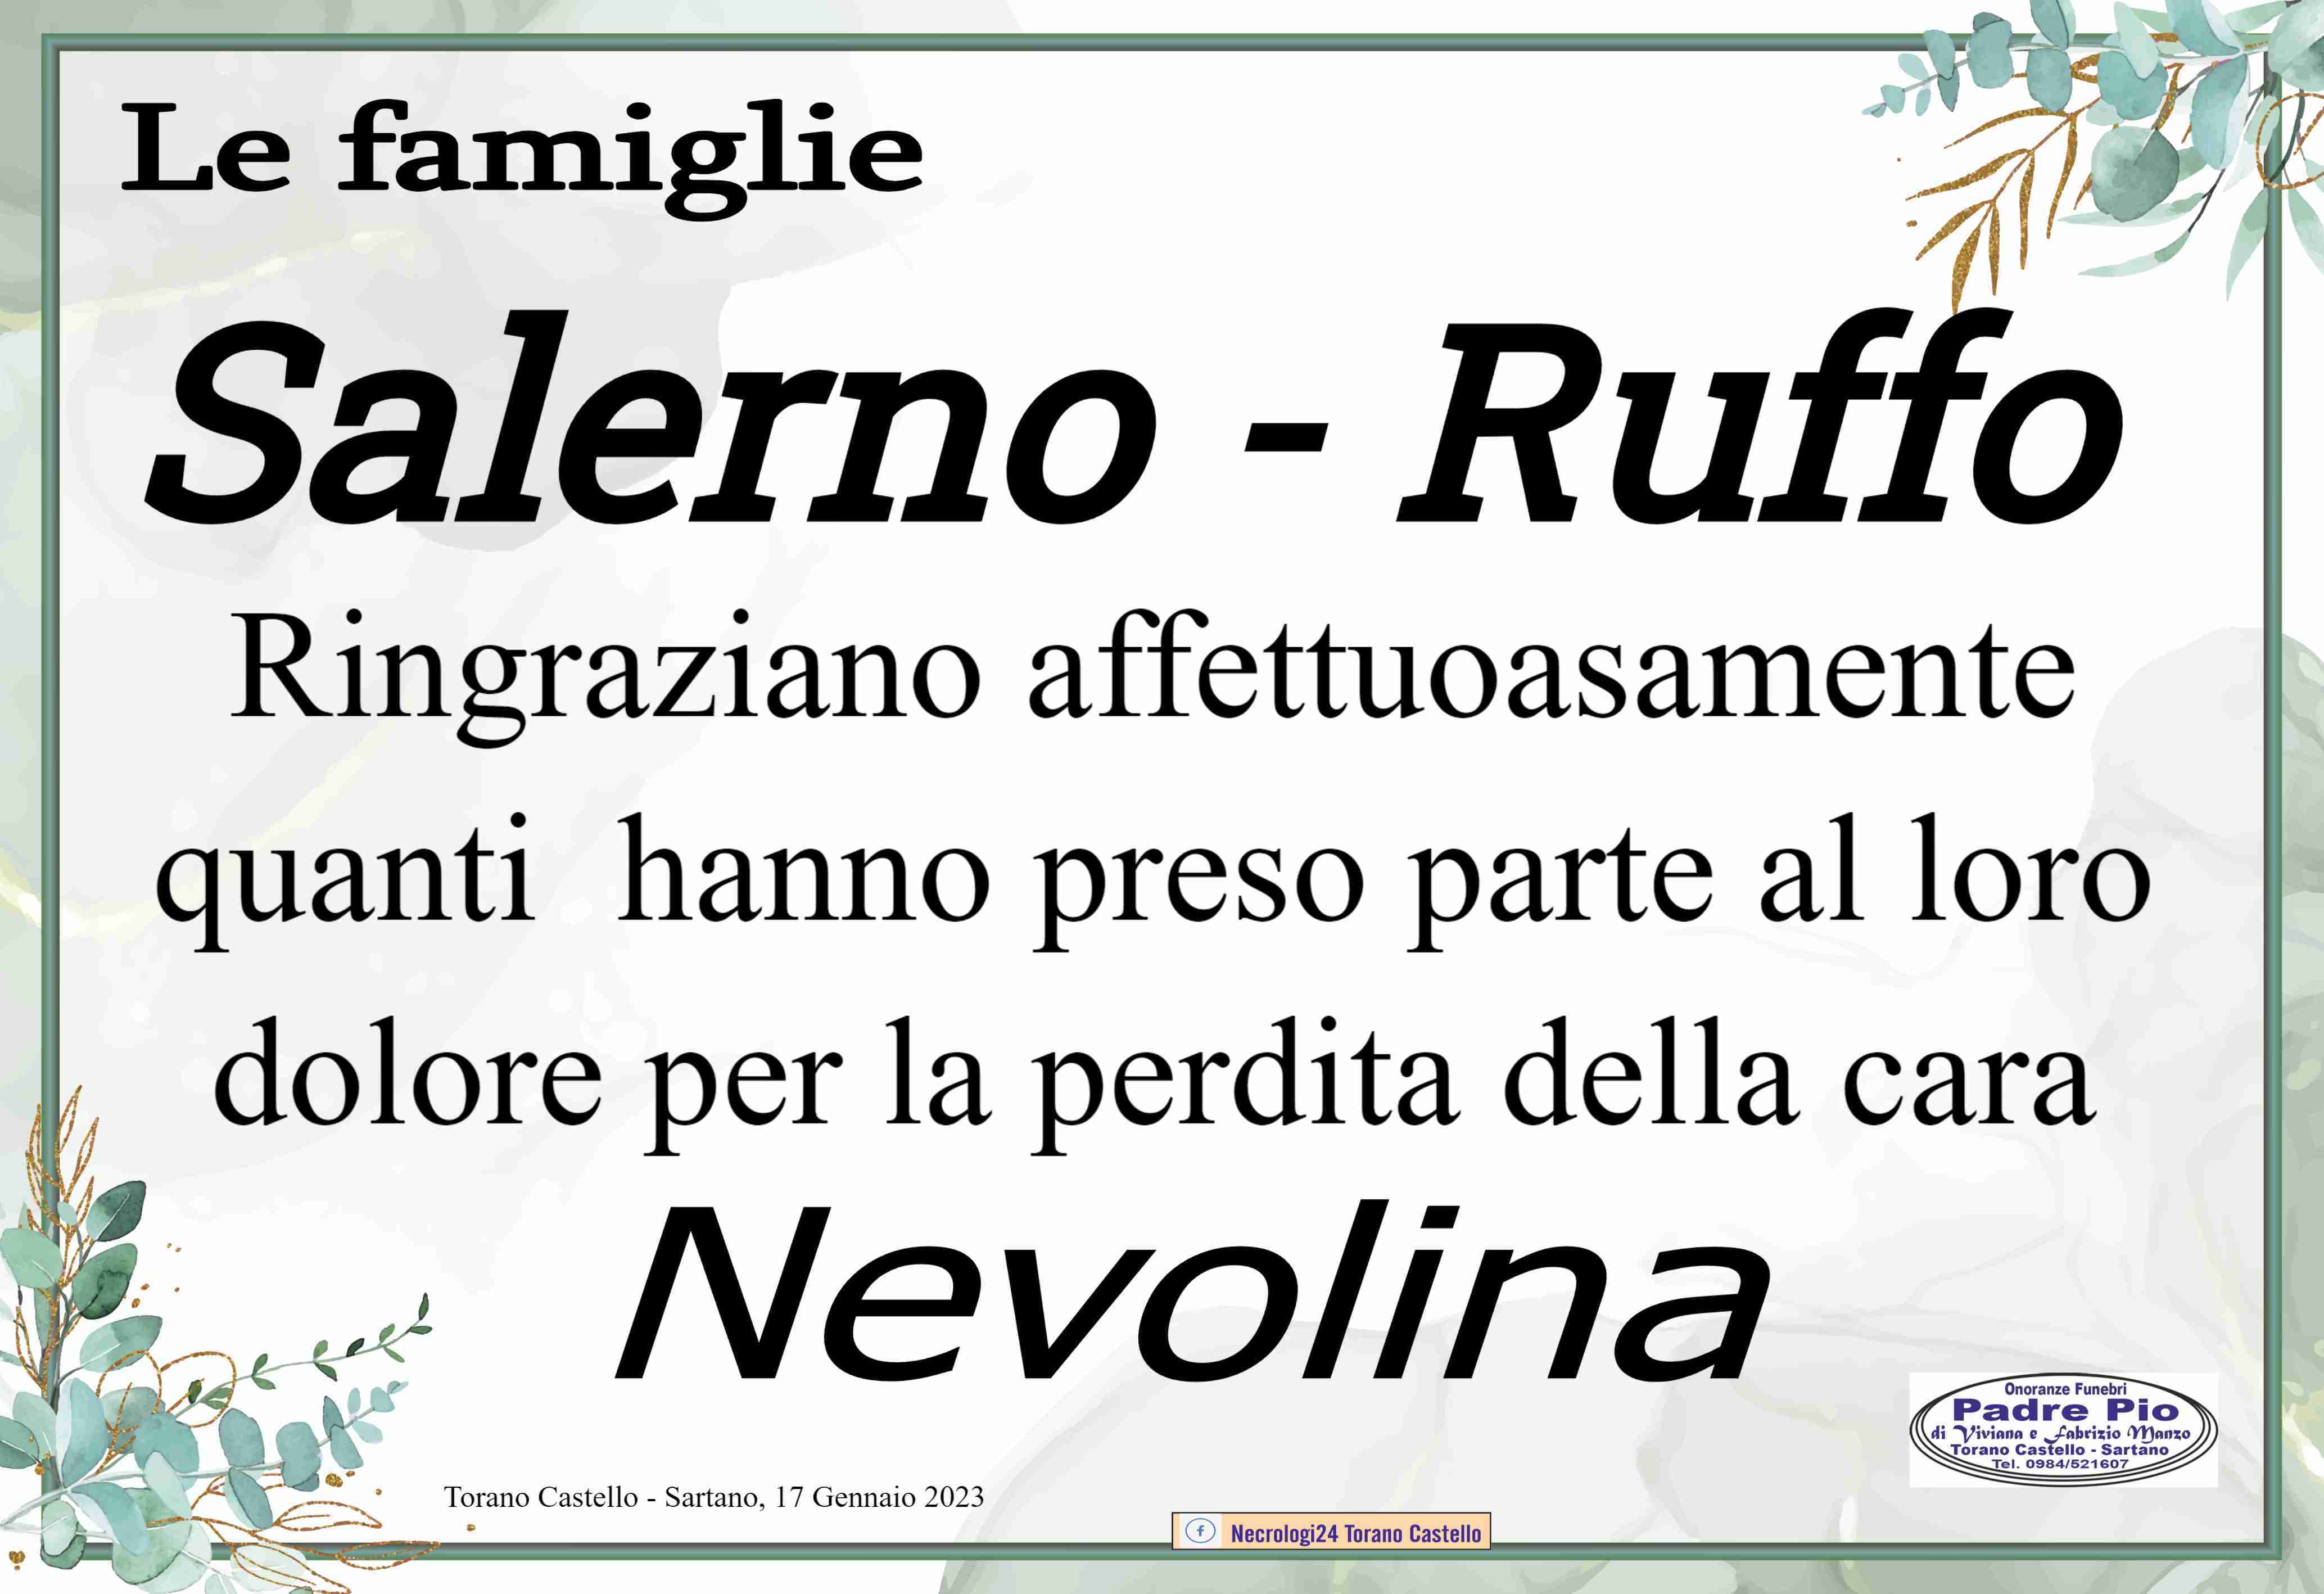 Nevolina Ruffo